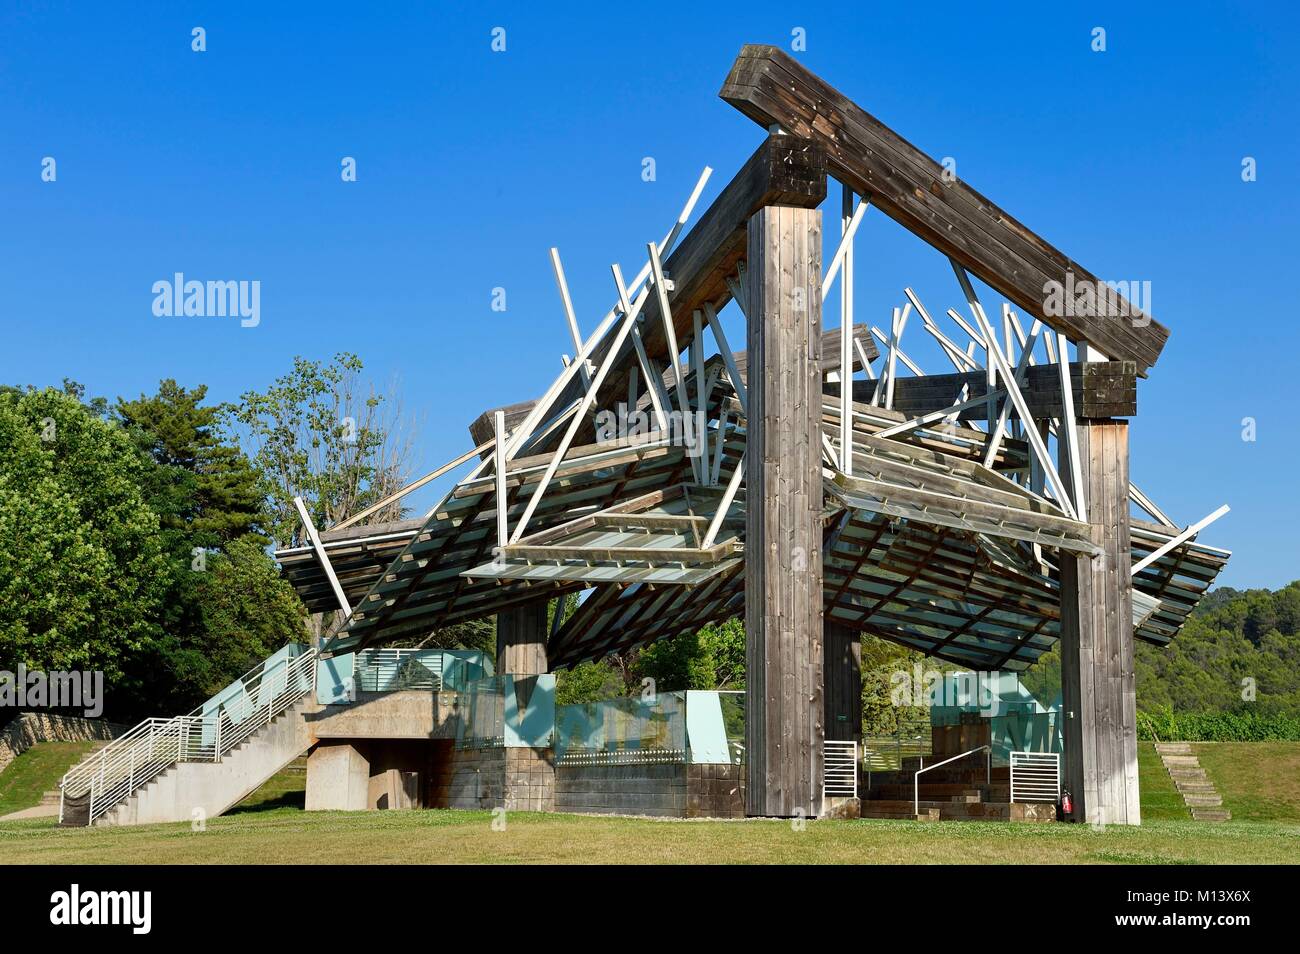 France, Bouches du Rhone, Le Puy Sainte Reparade, Chateau La Coste vignoble et centre d'art contemporain, de musique Pavillon par Frank O. Gehry (Mention obligatoire) Banque D'Images